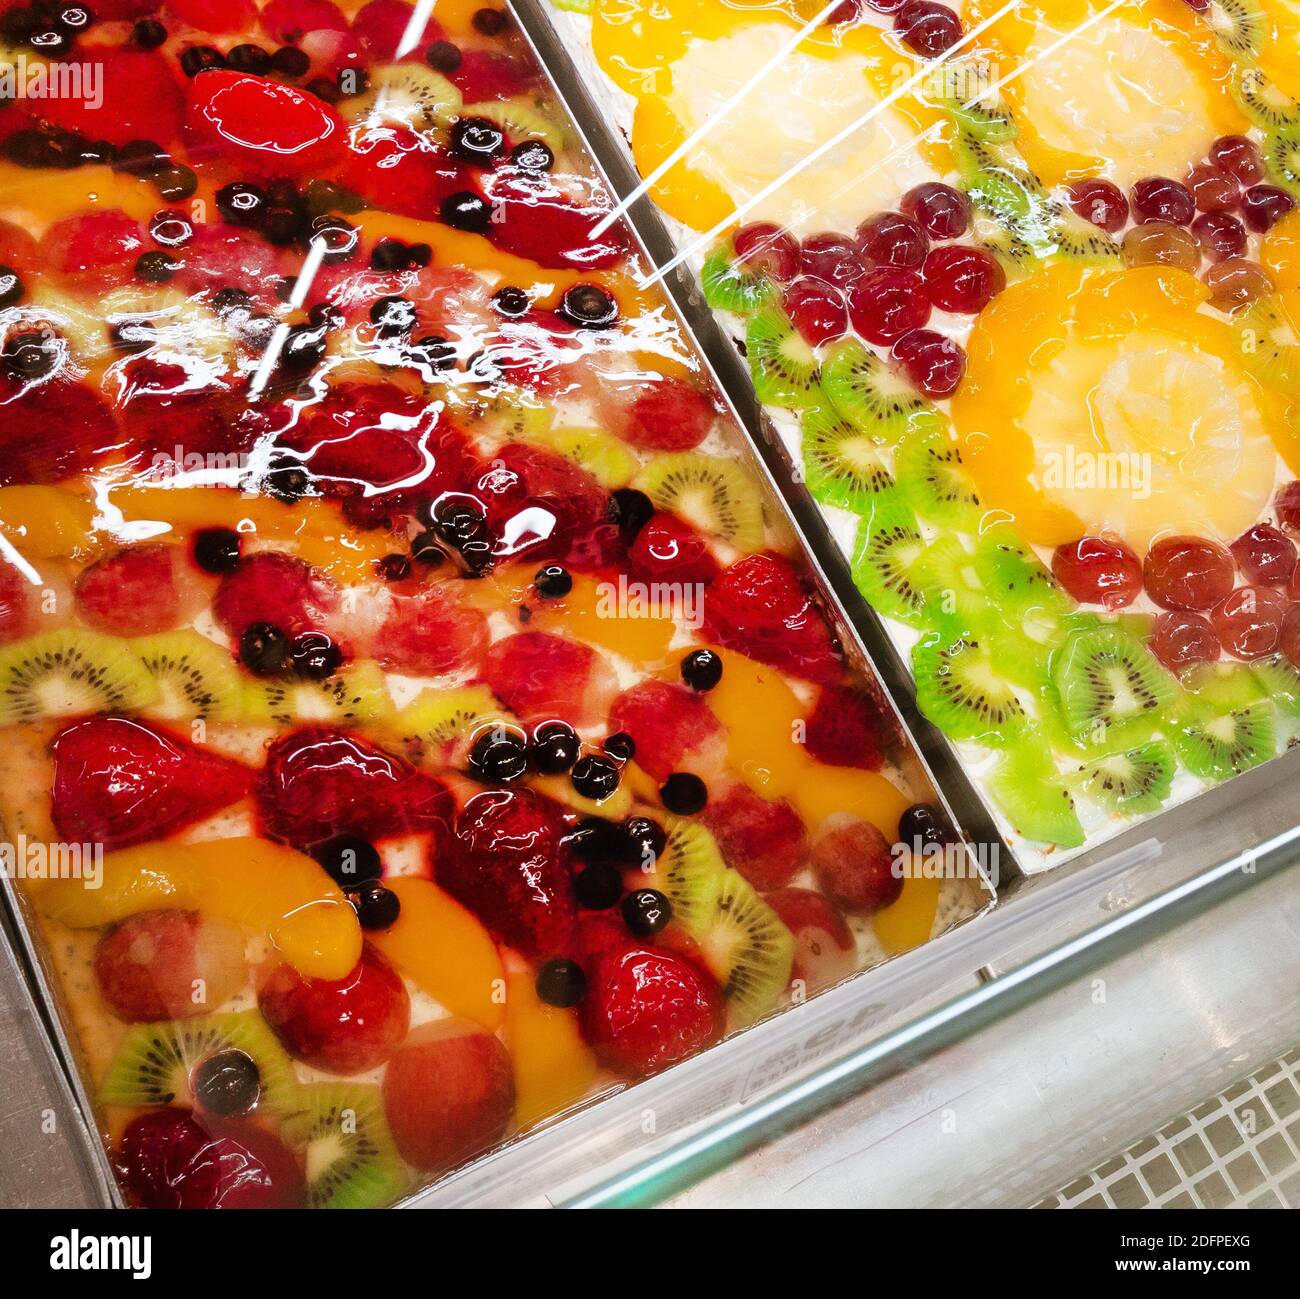 fruit cakes at sale, closeup Stock Photo